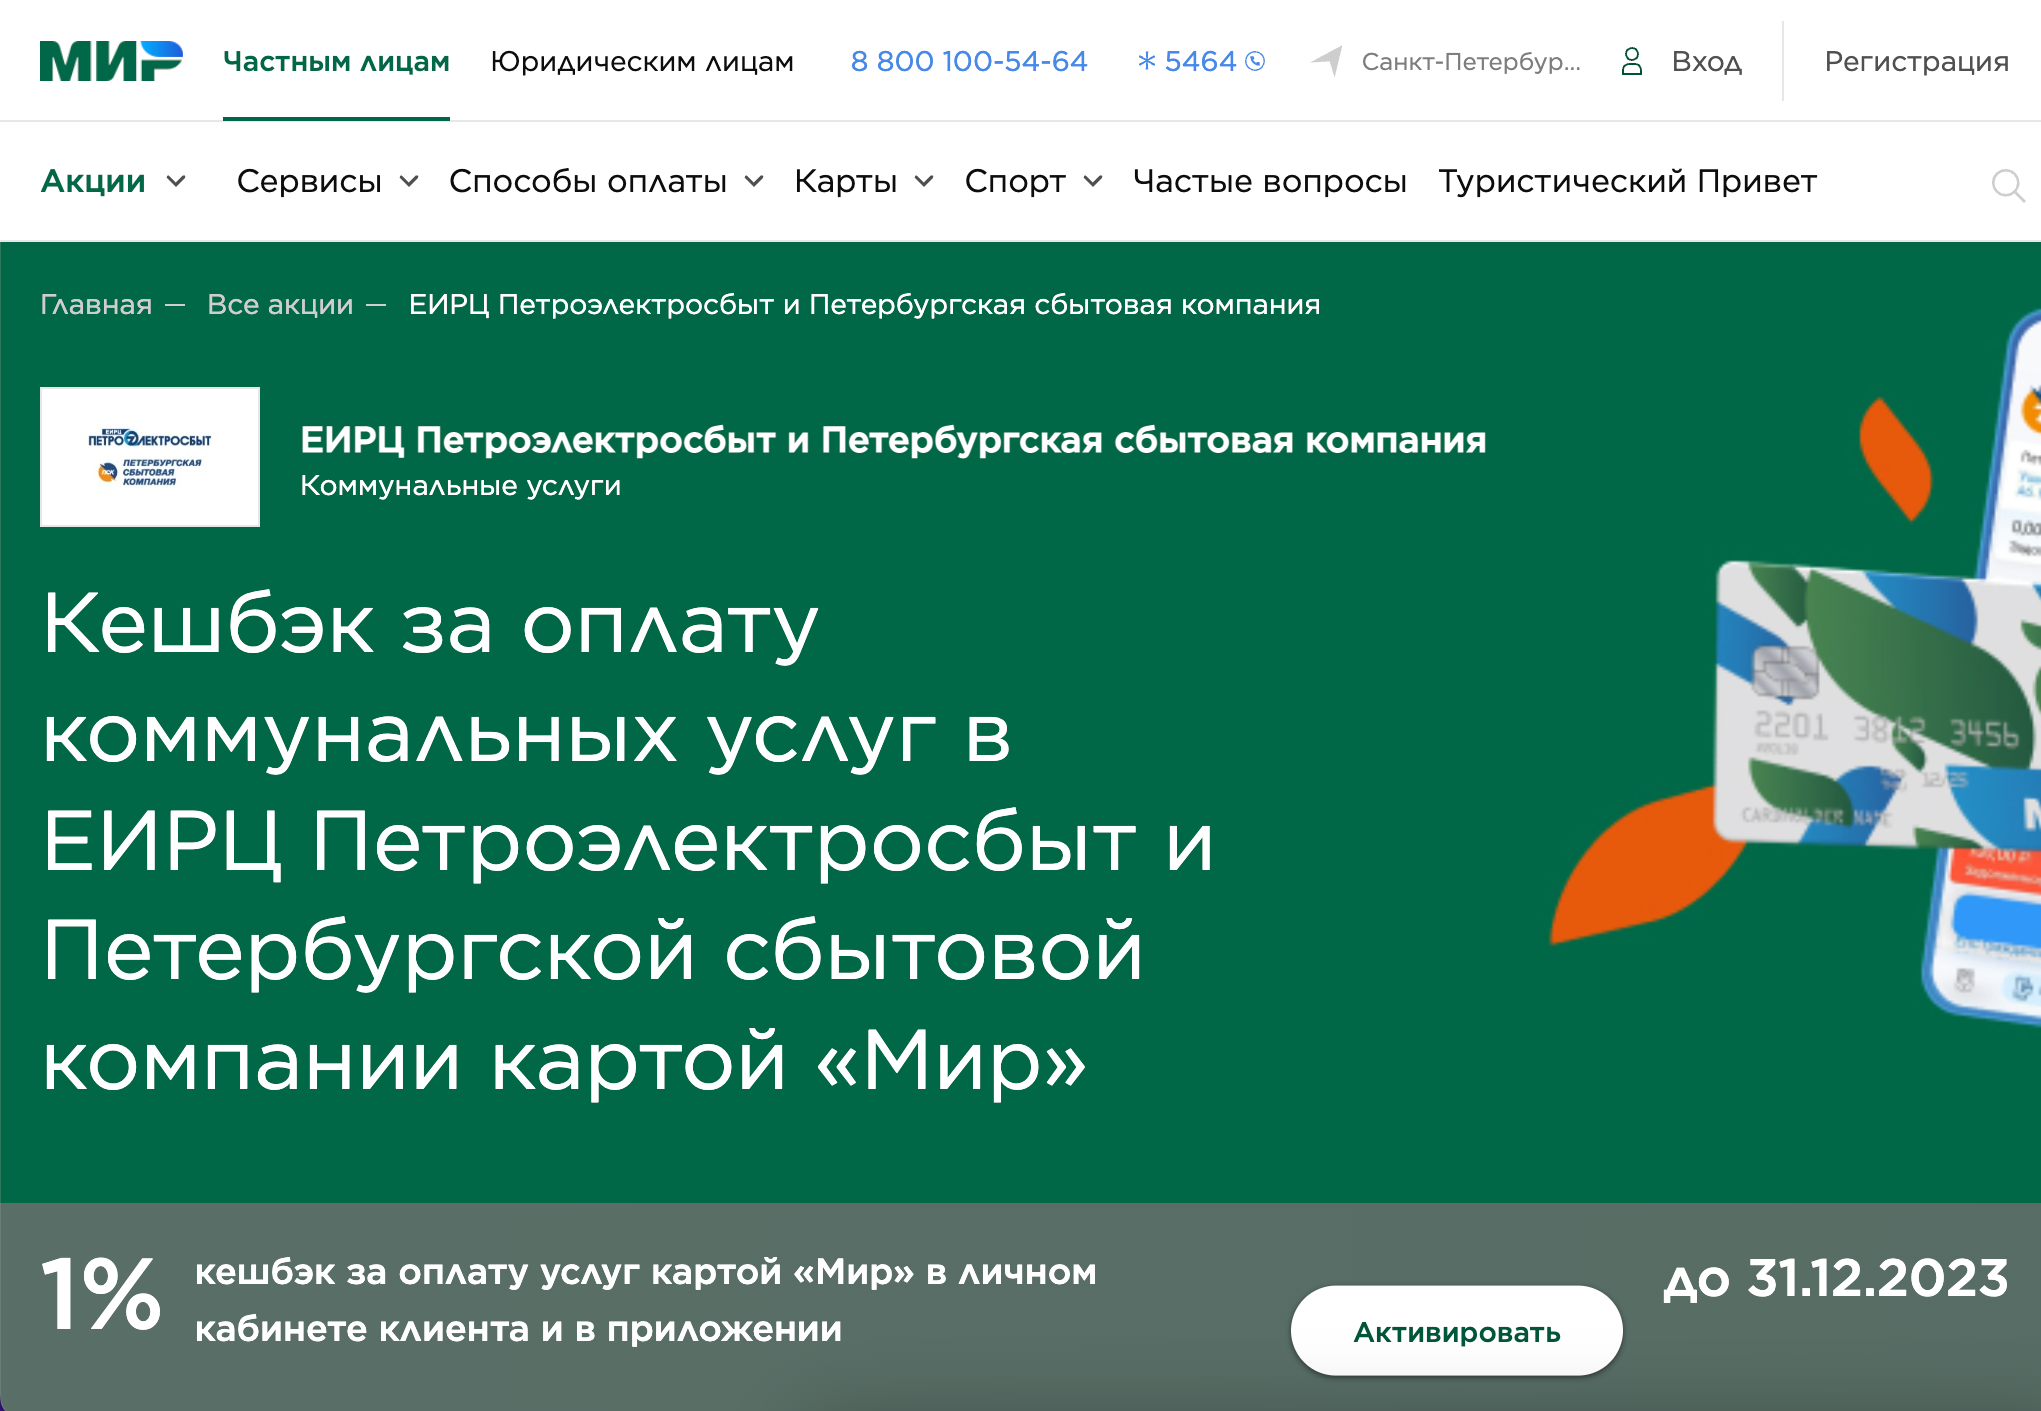 С «Единой картой петербуржца» можно экономить на оплате коммунальных услуг — получая кэшбэк 1%. Источник: privetmir.ru